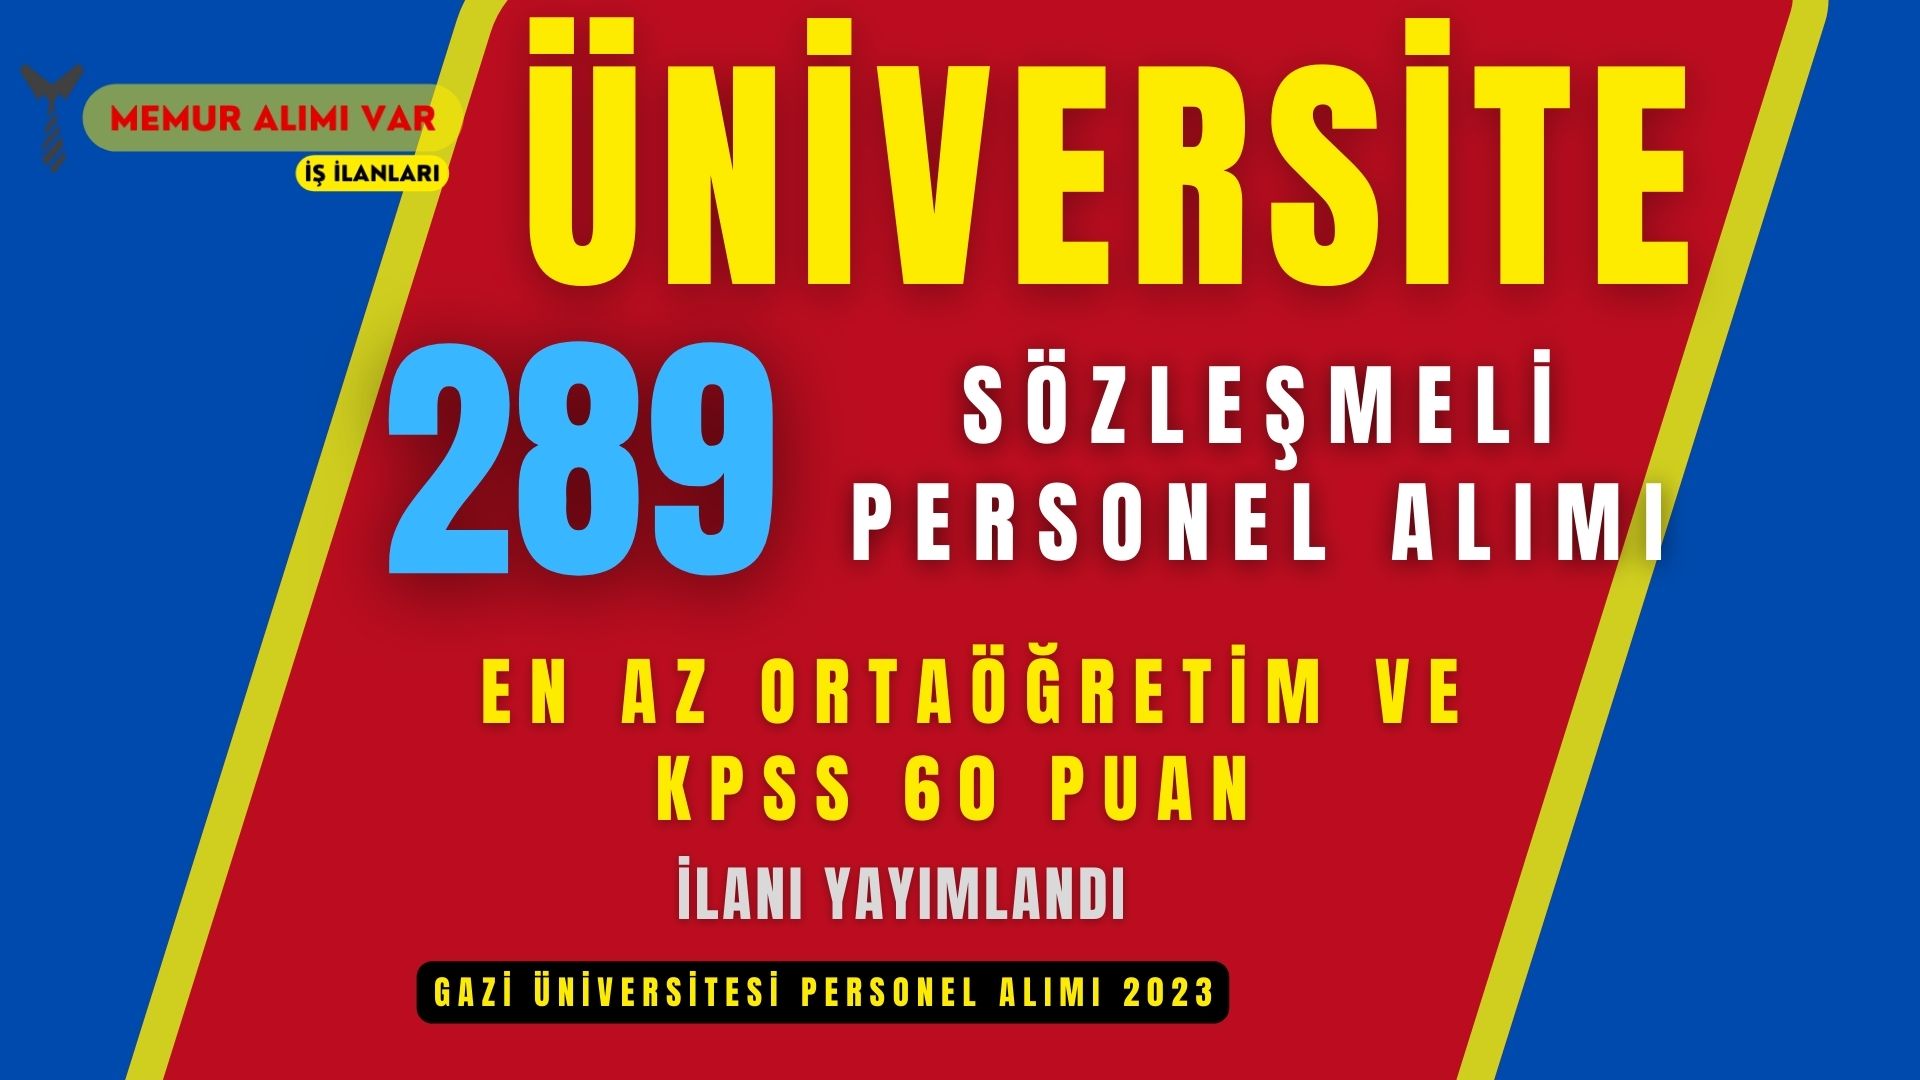 Gazi Üniversitesi 289 Sözleşmeli Personel Alımı İş Başvuru Formu